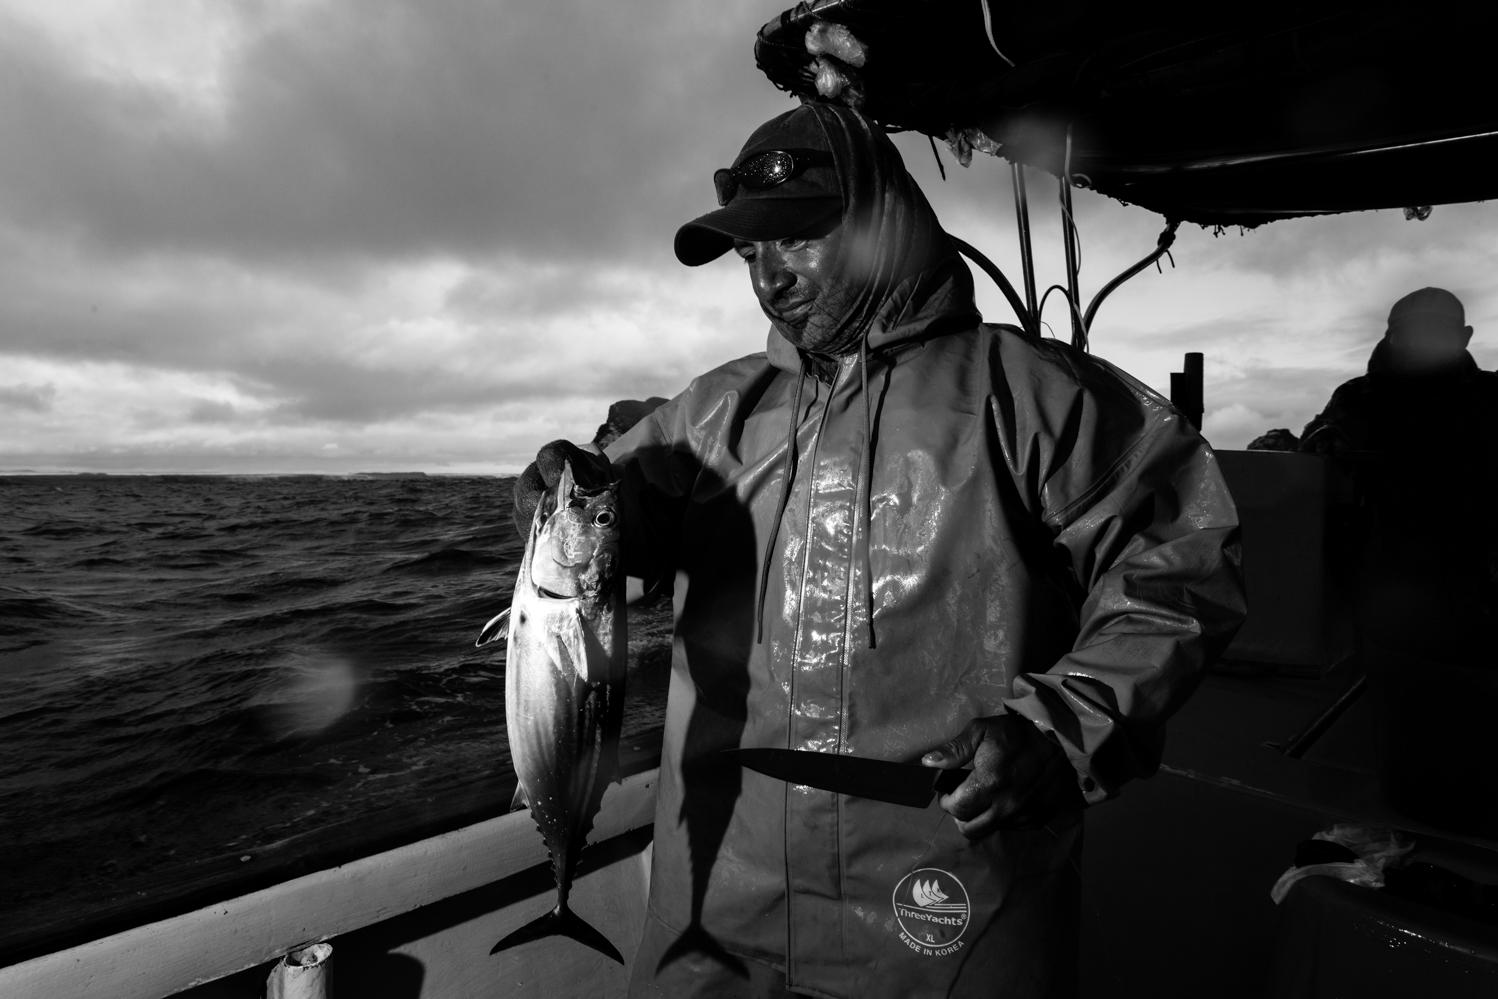 Walter Borbon pescador artesana...semana. Islas Galapagos, 22 sep